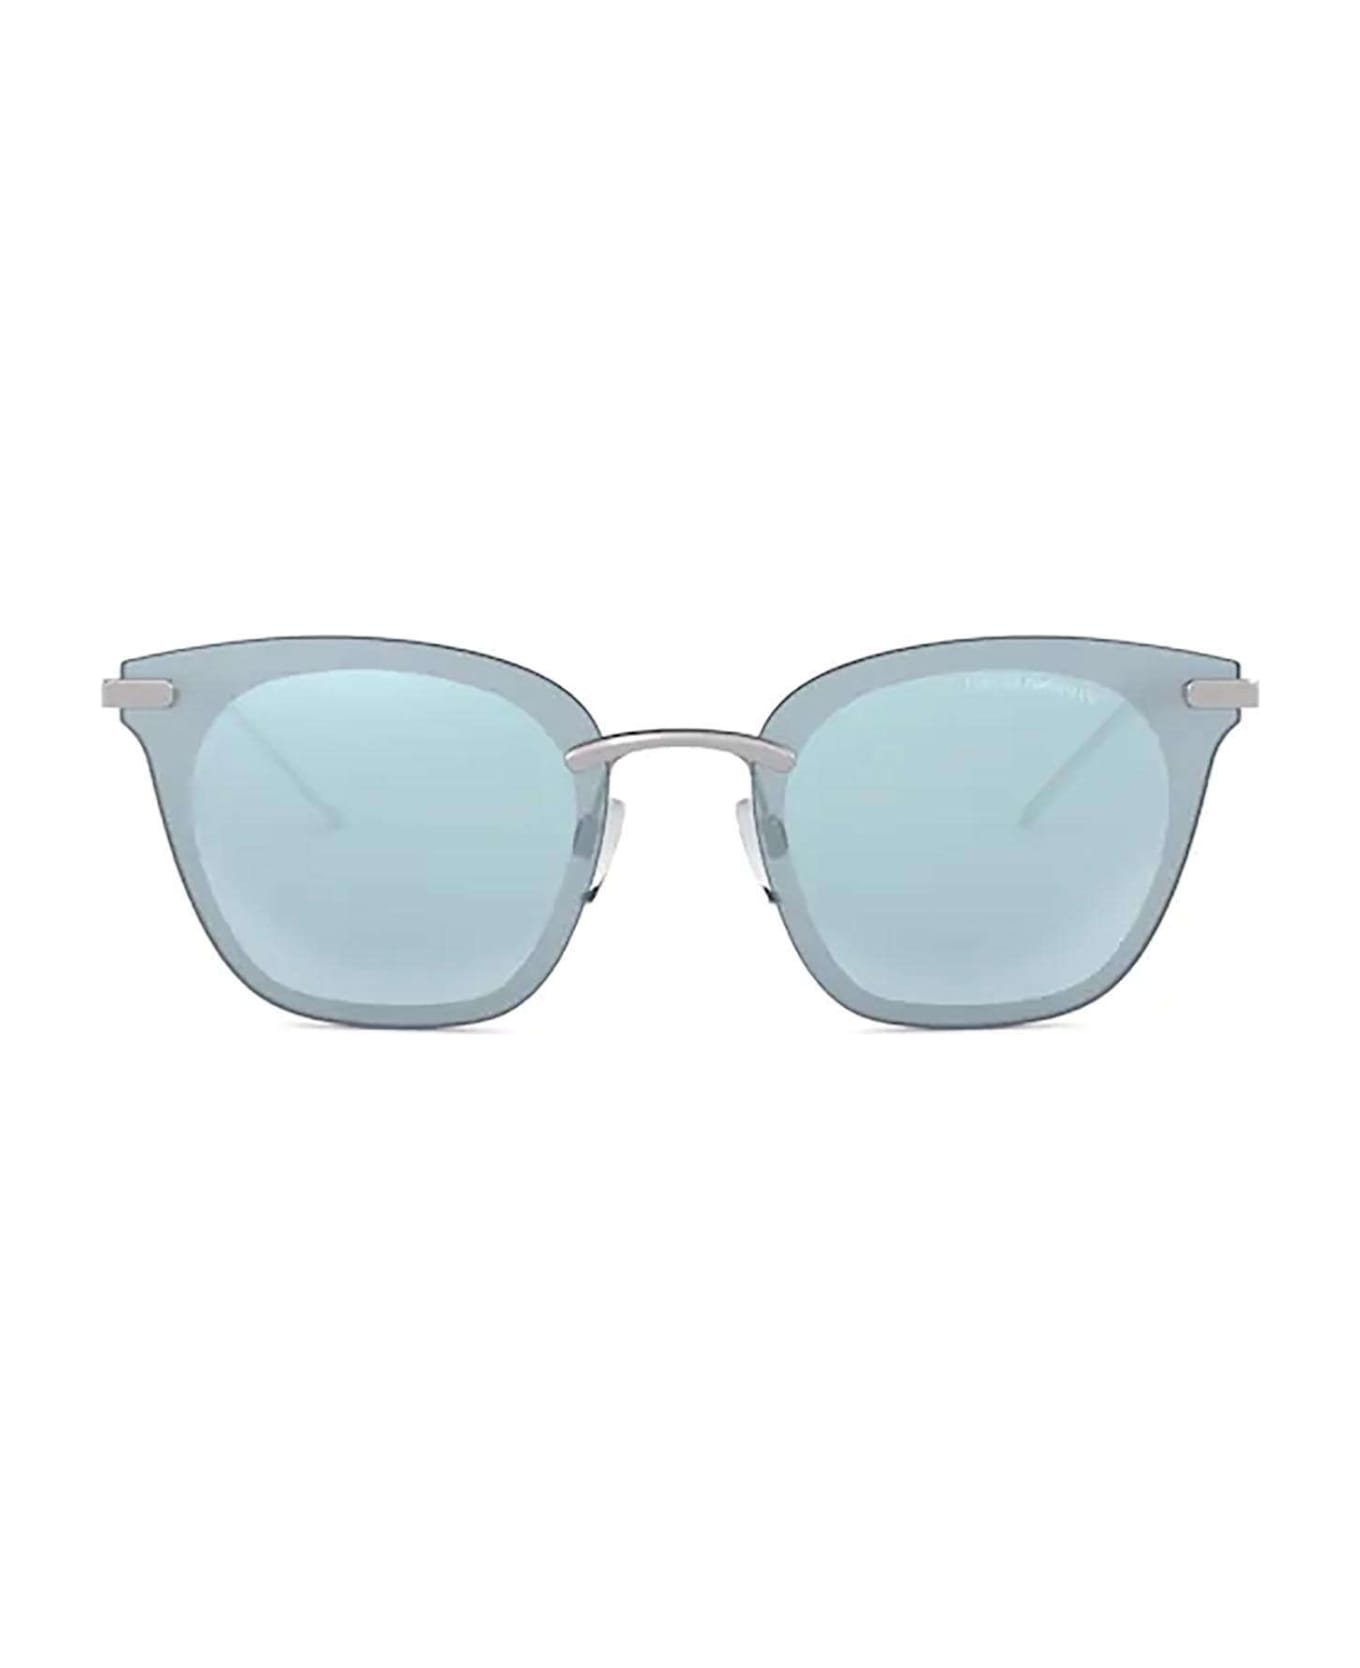 Emporio Armani Ea2075 Silver Sunglasses - Silver